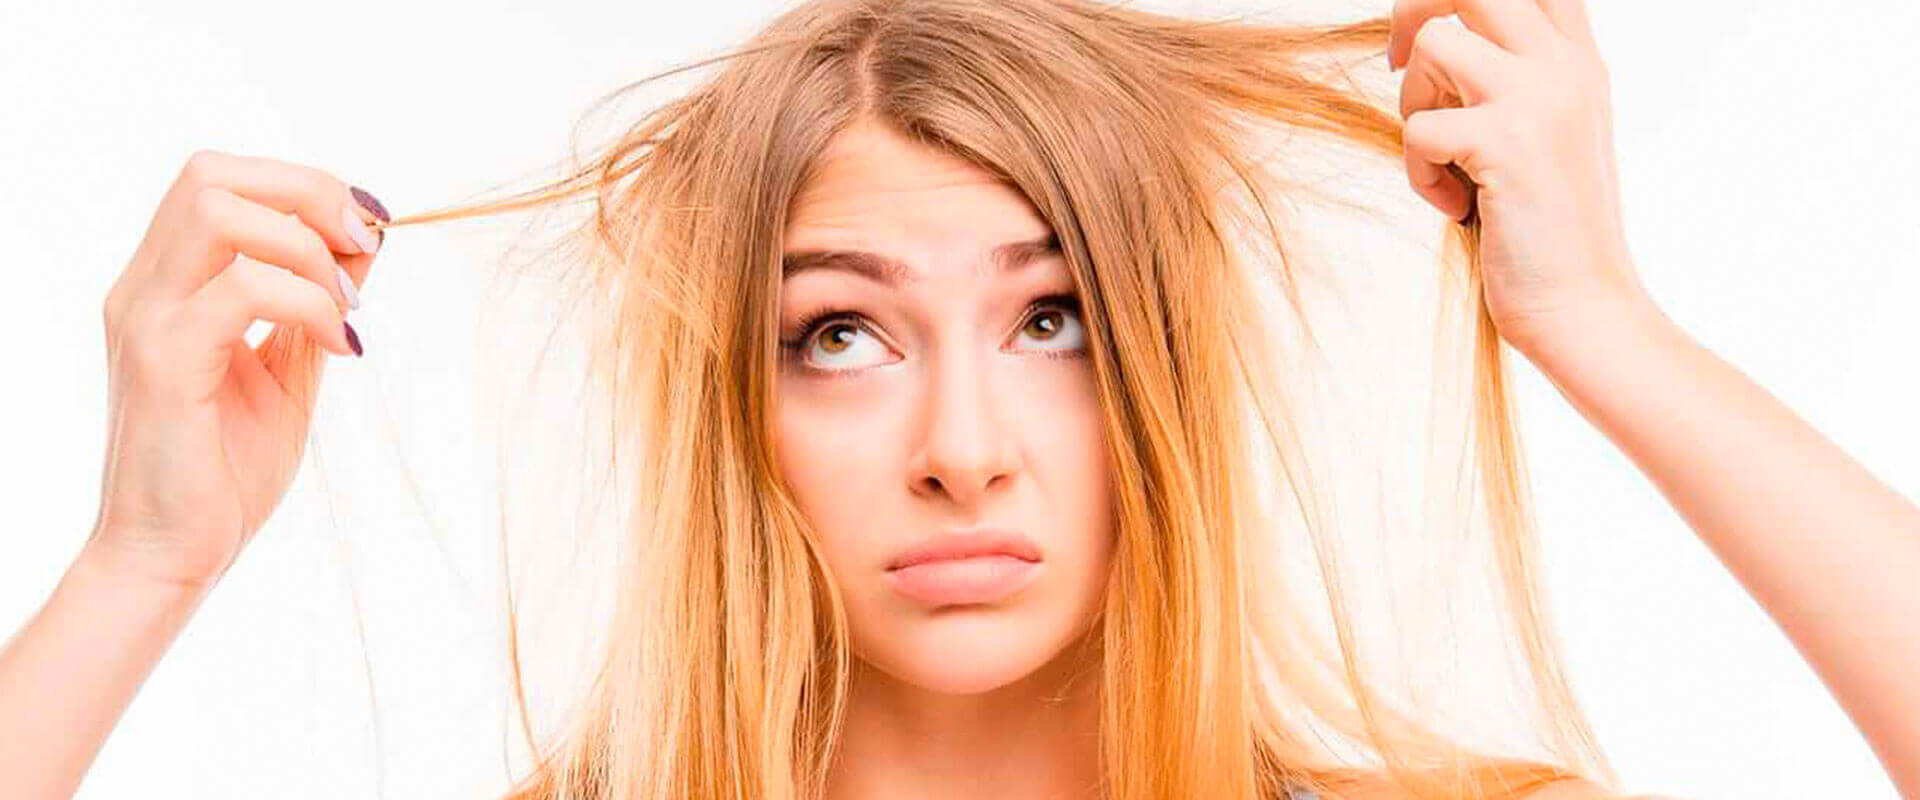 Queda de cabelo – Principais causas